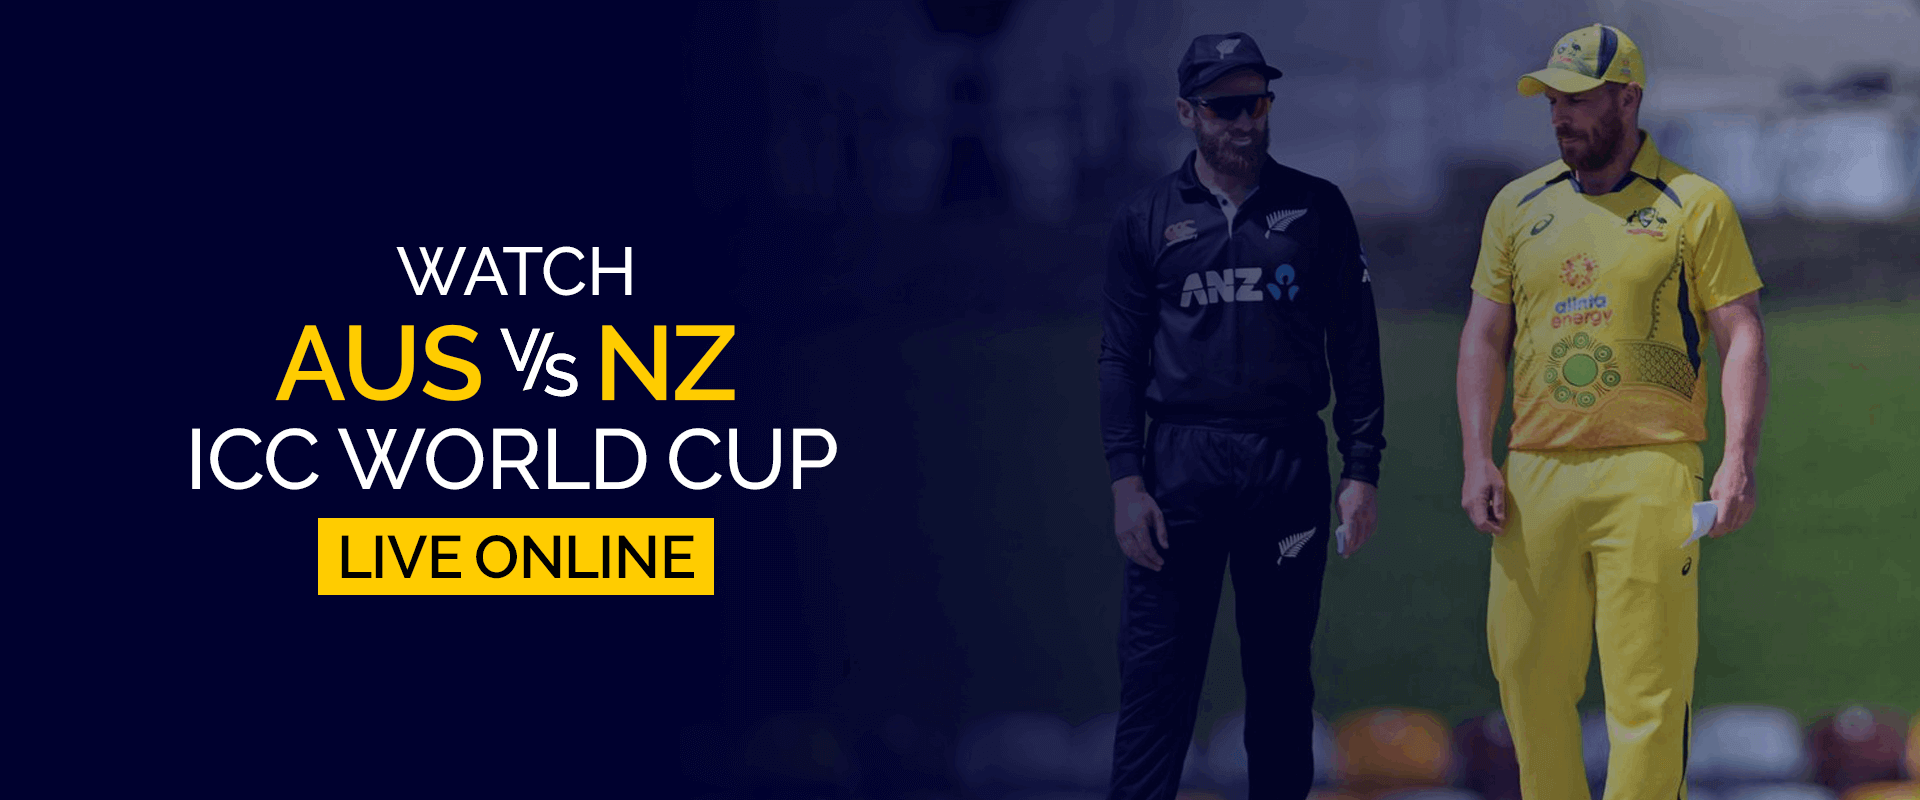 Guarda la Coppa del mondo ICC Australia-Nuova Zelanda in diretta online